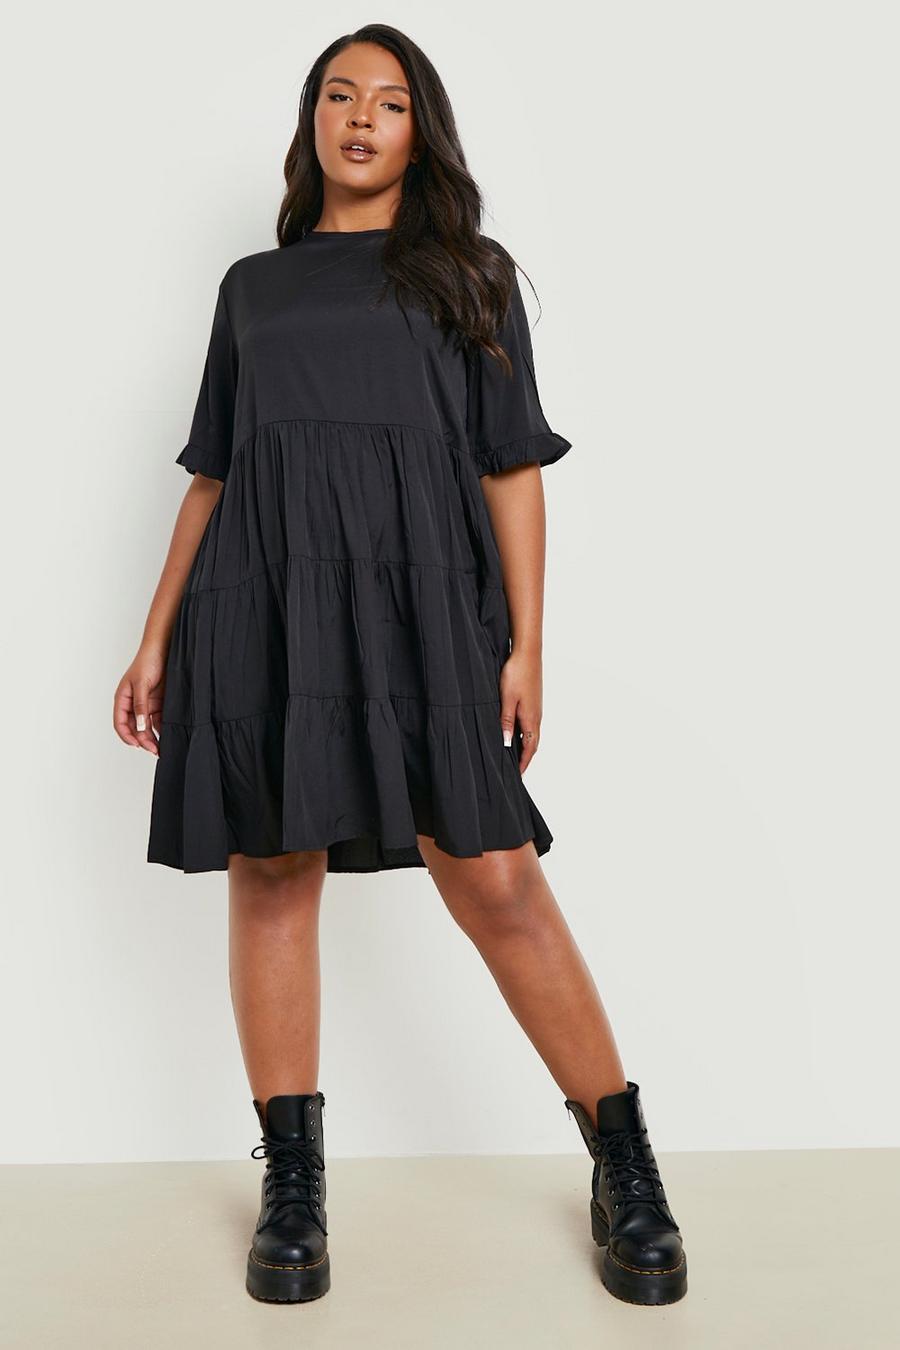 Simple Black Dress #lularoedebbie